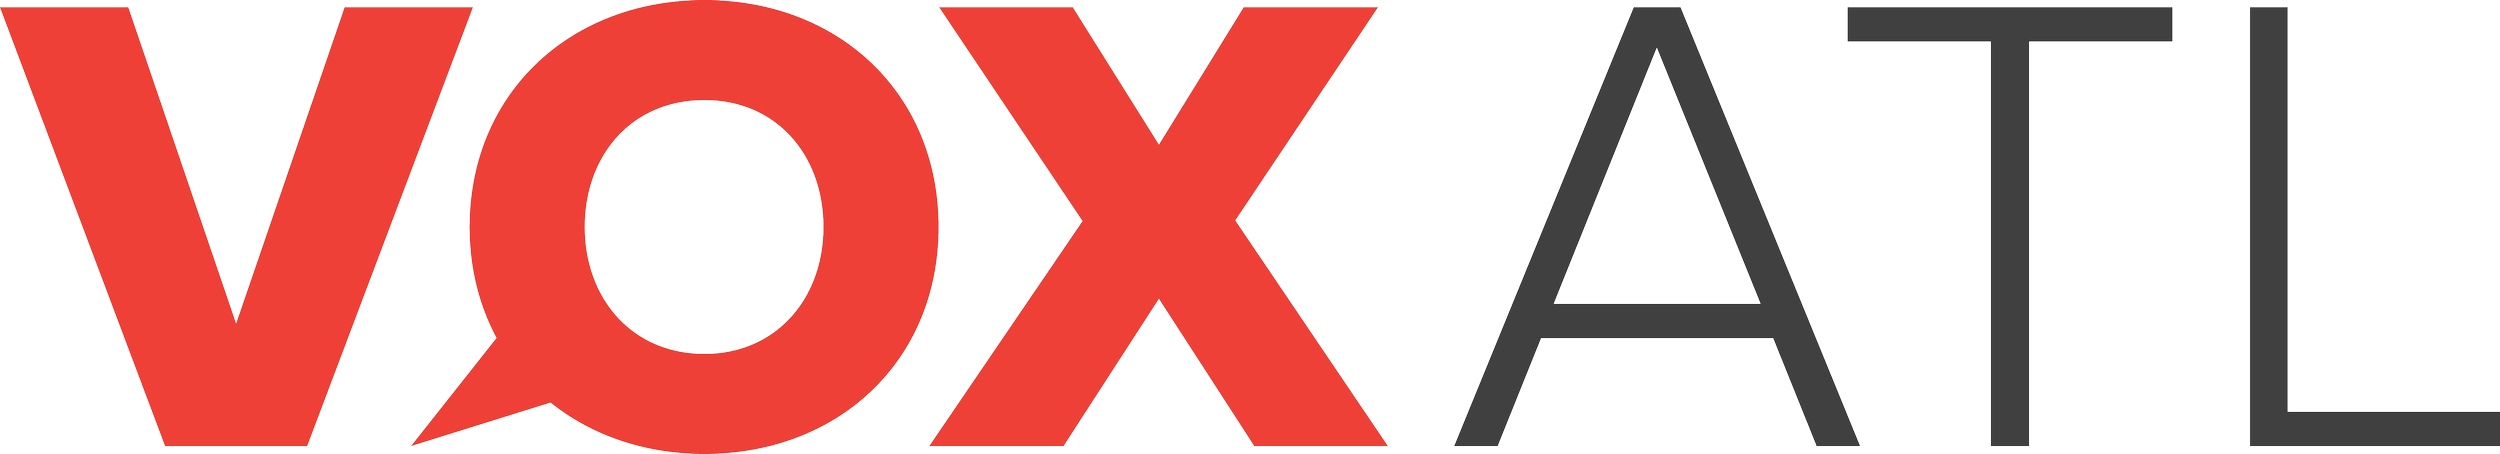 VOX Atl Logo.png